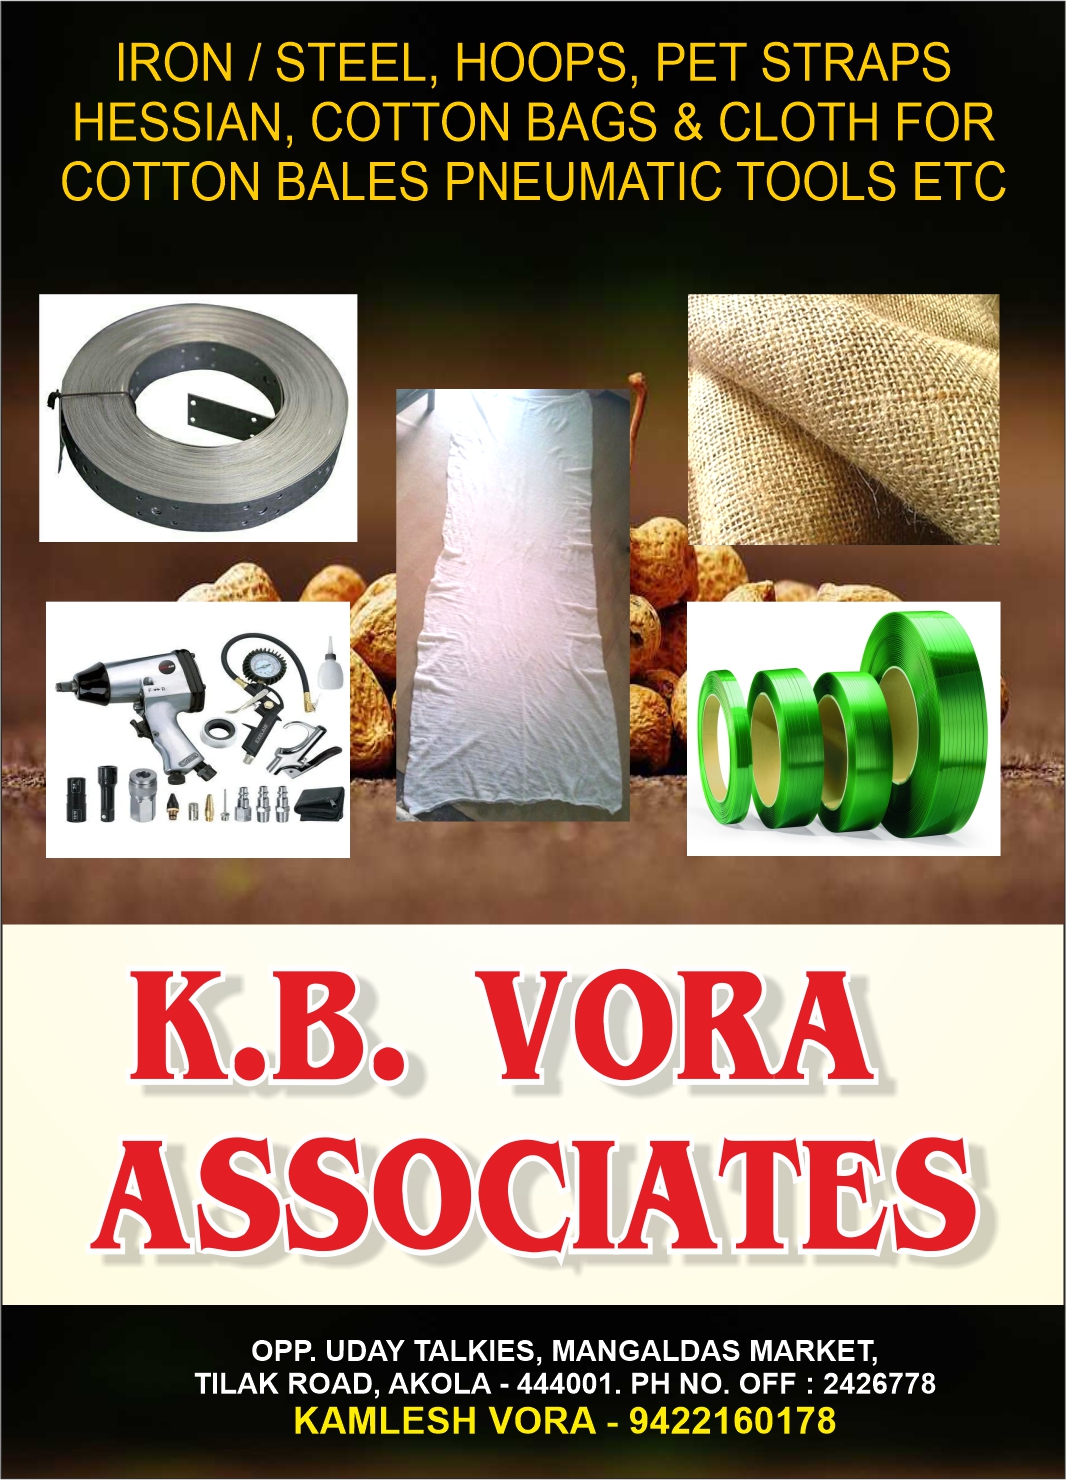 K. B. Vora Associates